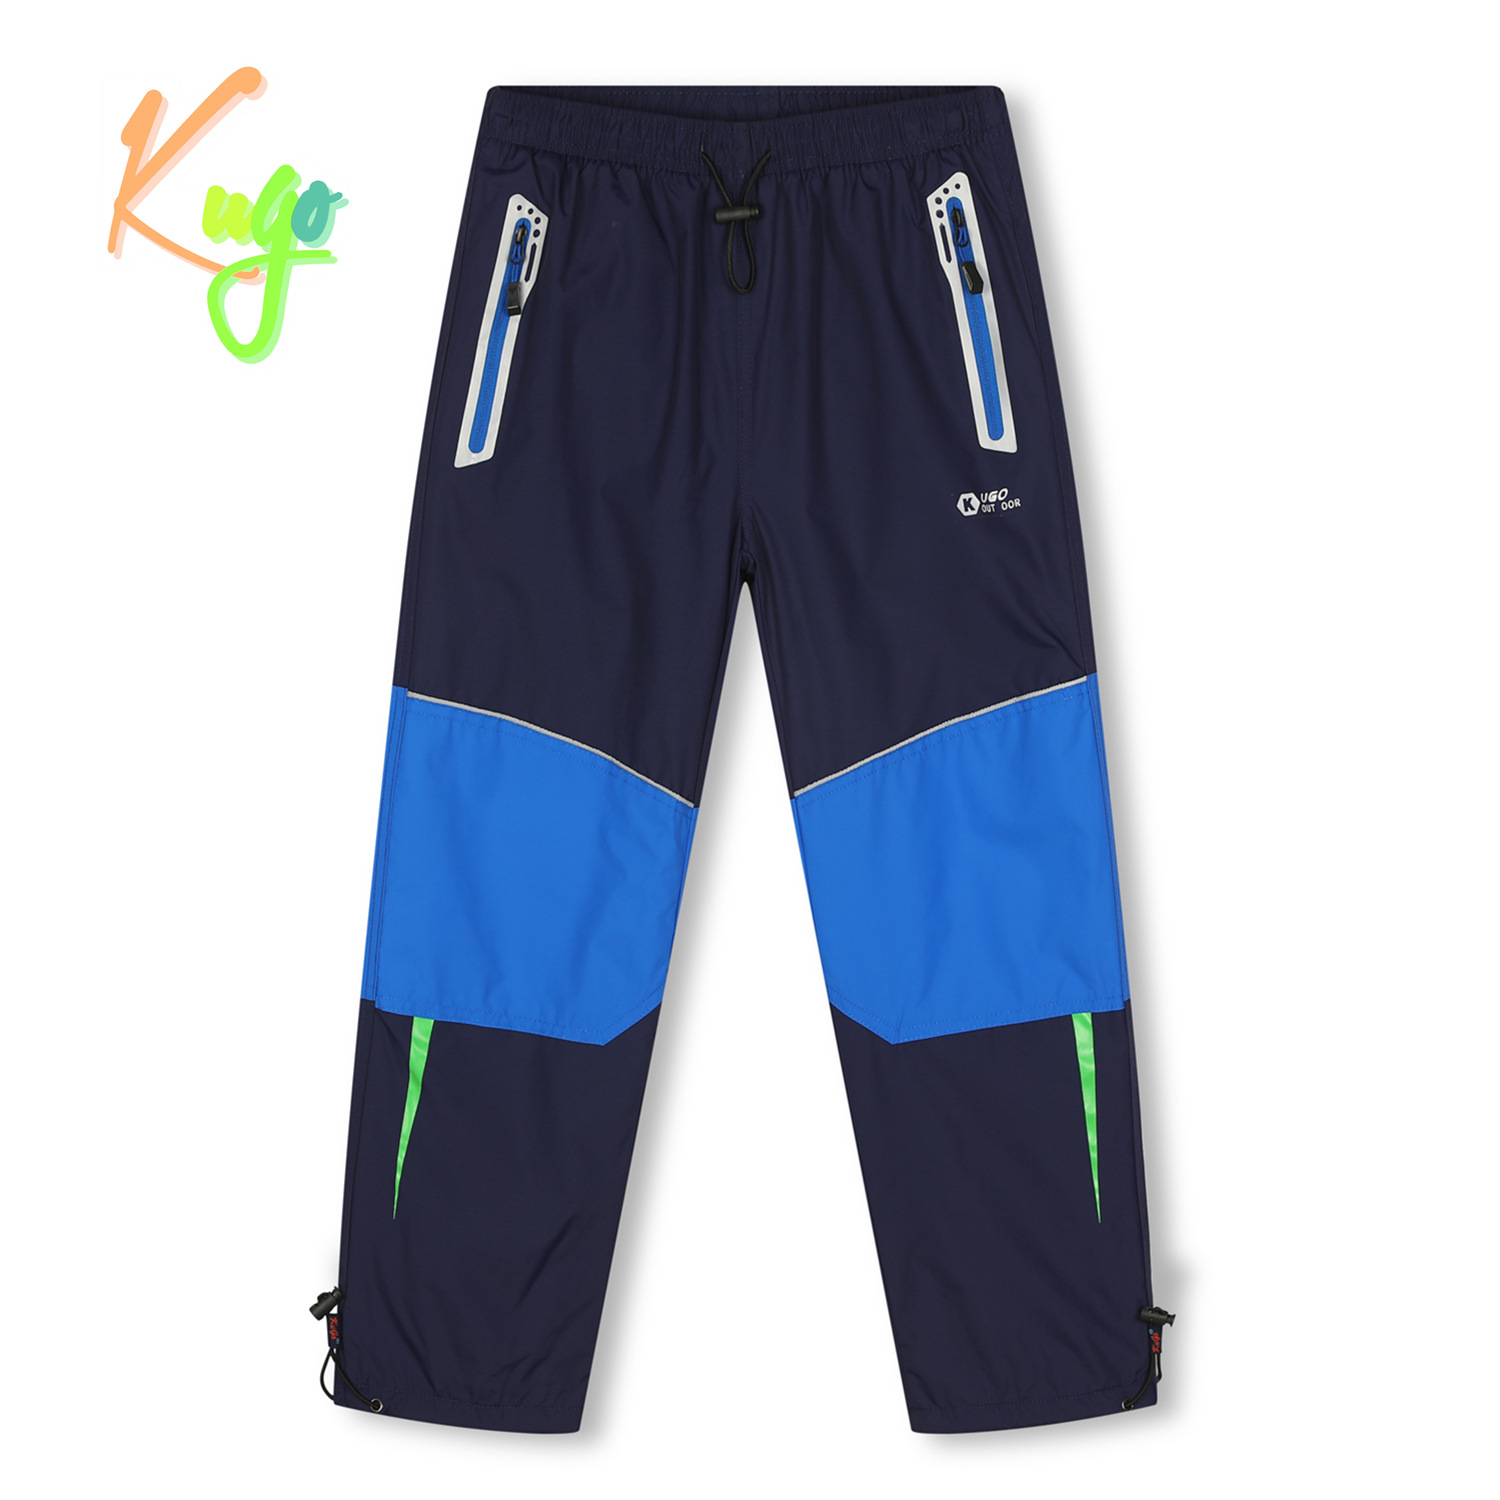 Chlapecké šusťákové kalhoty, zateplené - KUGO DK7132, tmavě modrá Barva: Modrá tmavě, Velikost: 134